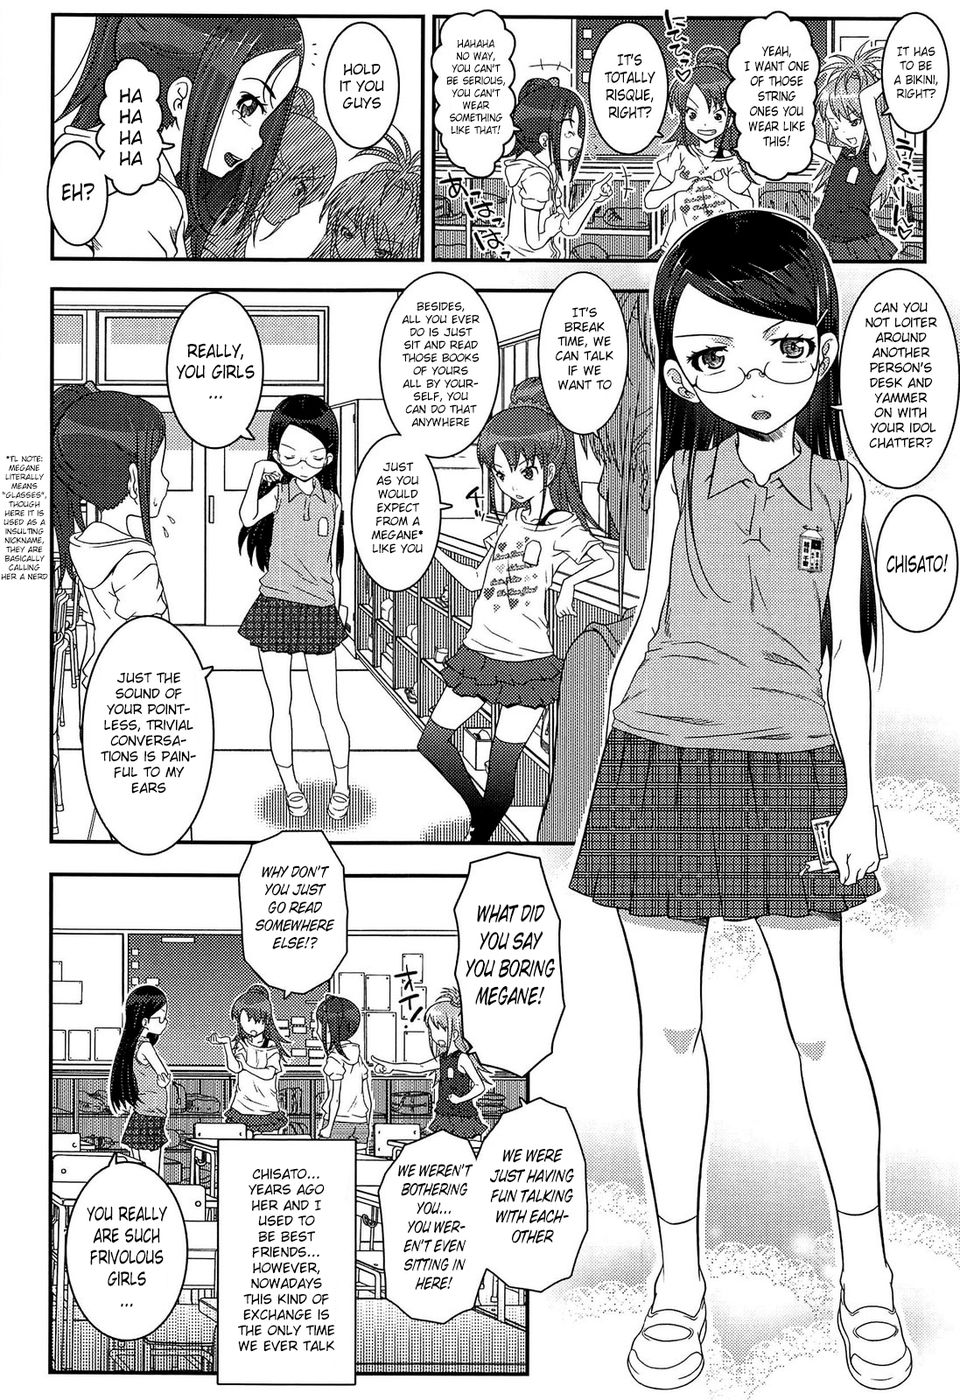 Hentai Manga Comic-Their Relationship-Read-2